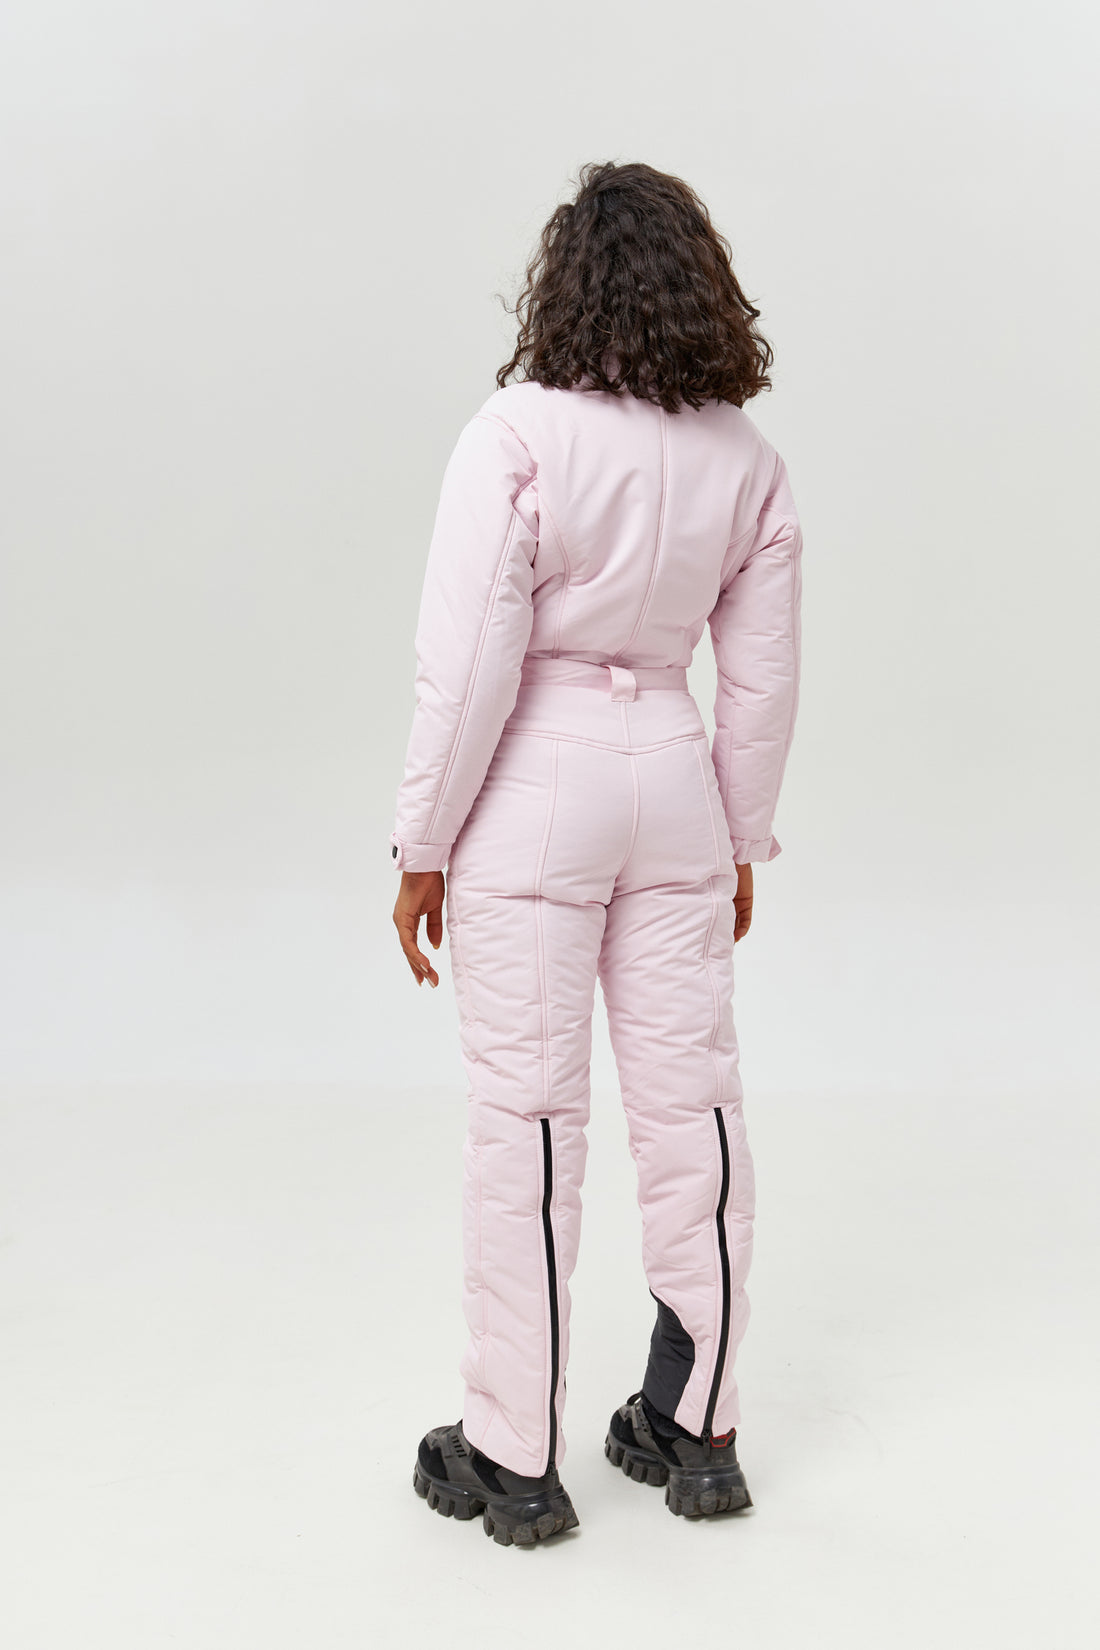 Blush pink waterproof snowsuit - RAINIER - PINK membrana - Women winter outwear